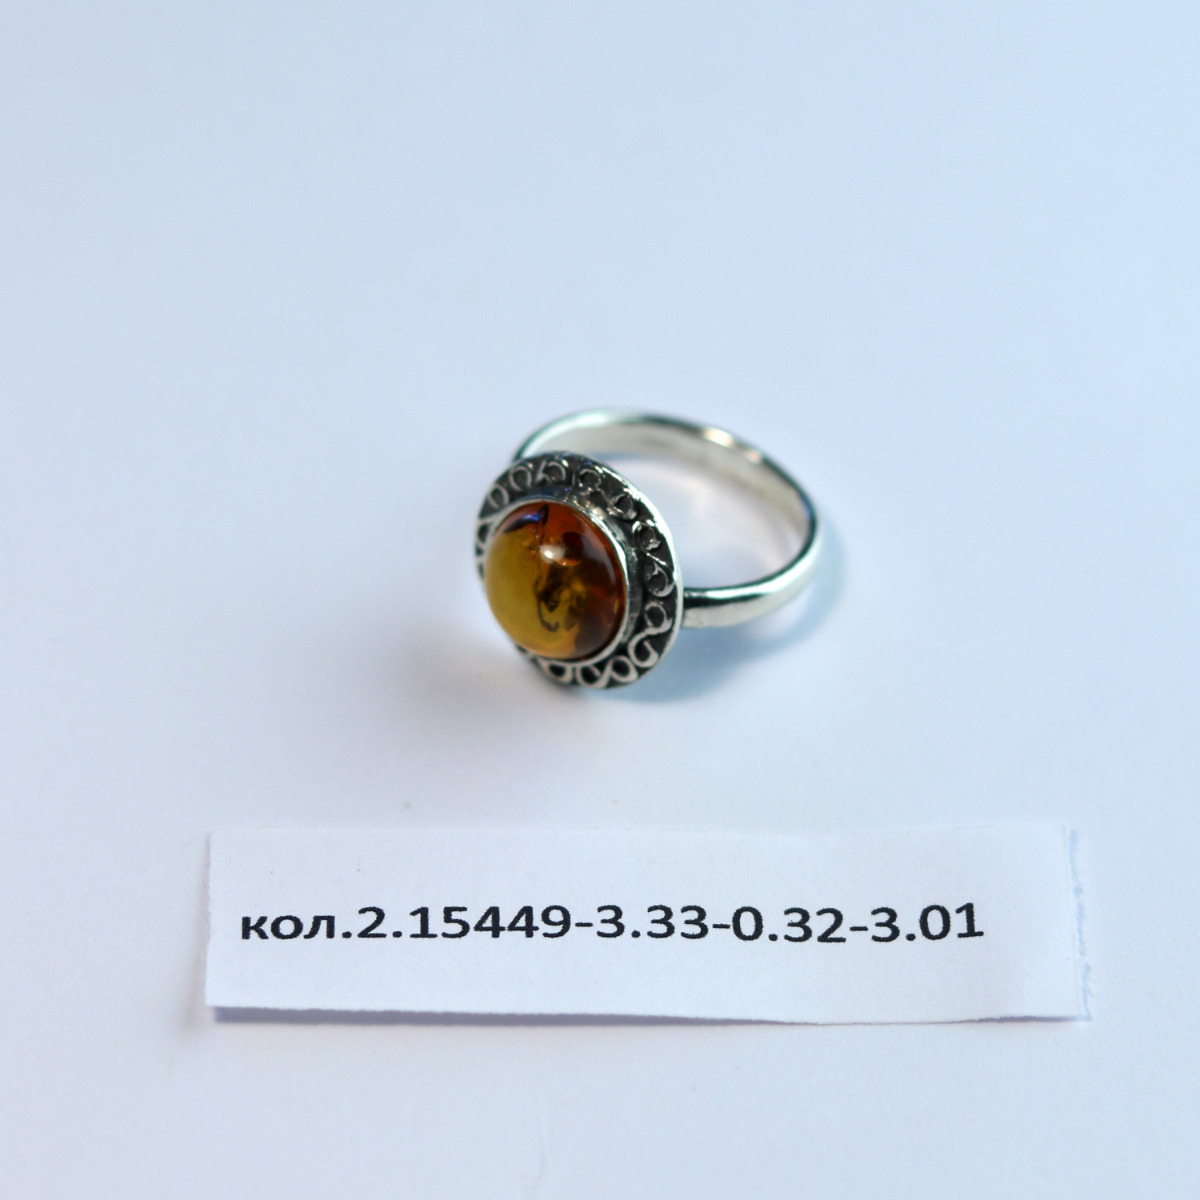 Кольцо Мелия - 2.15449